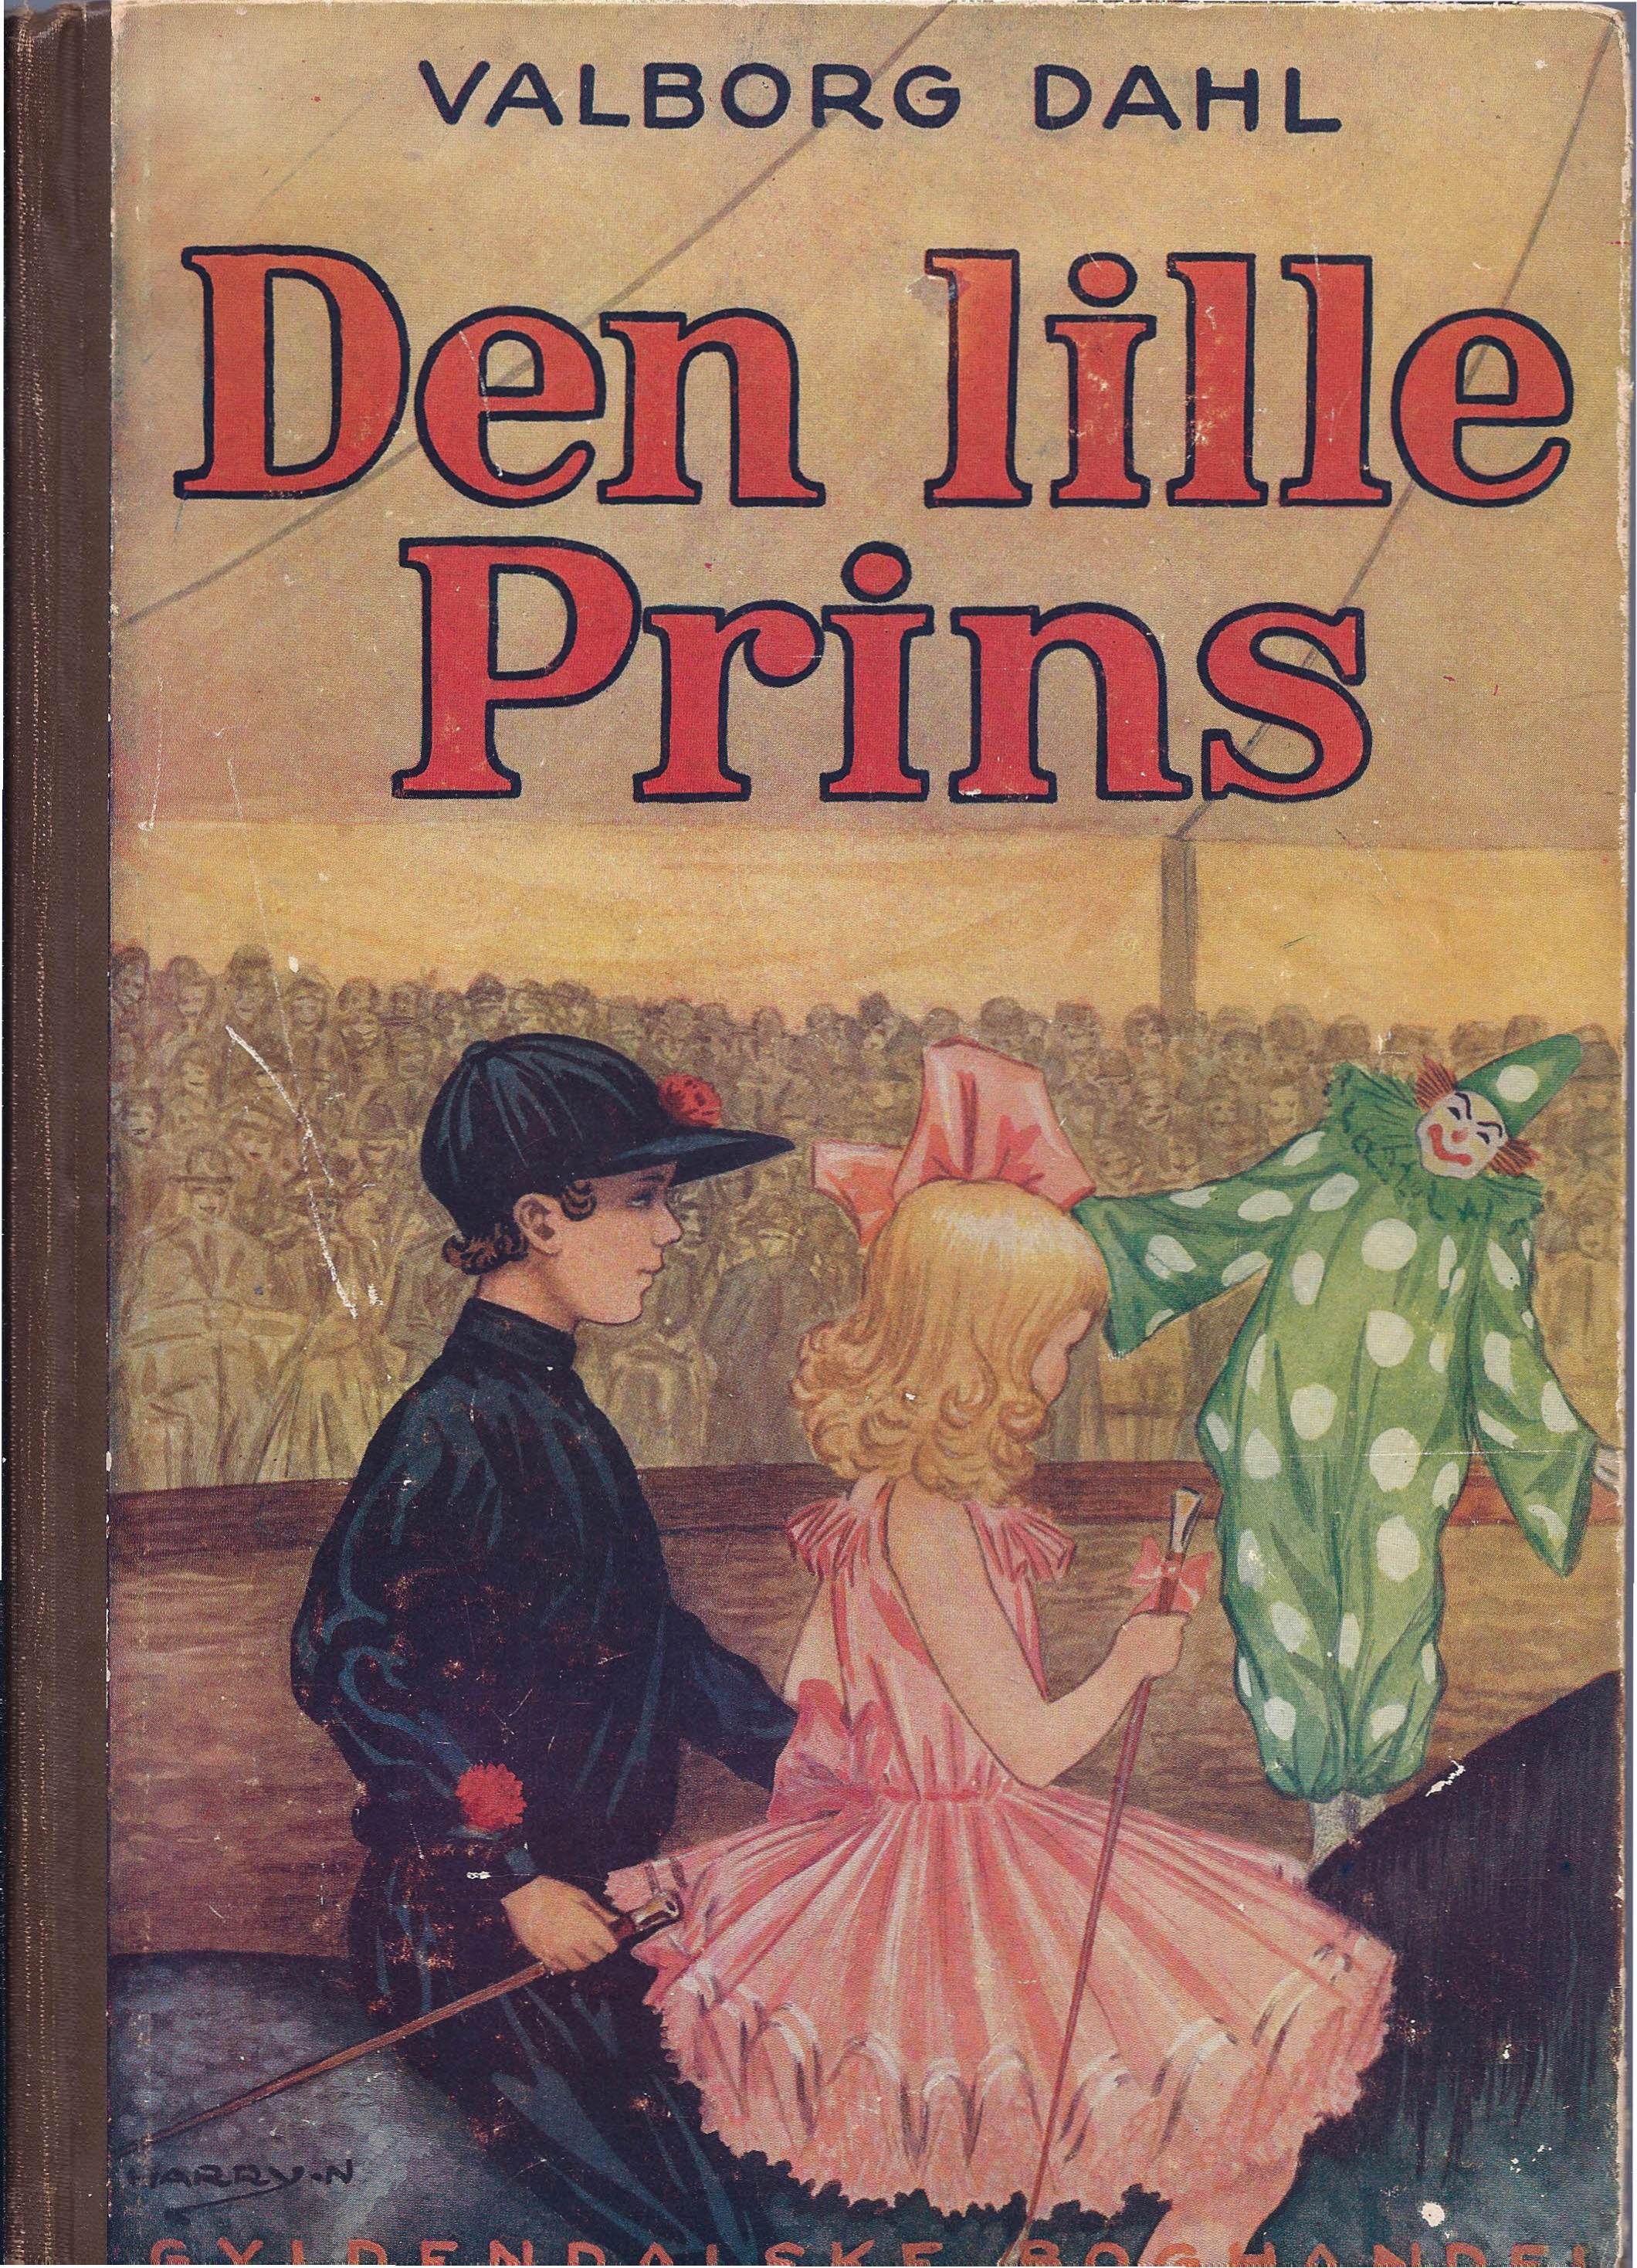 Den lille prins - Valborg Dahl 1925-1